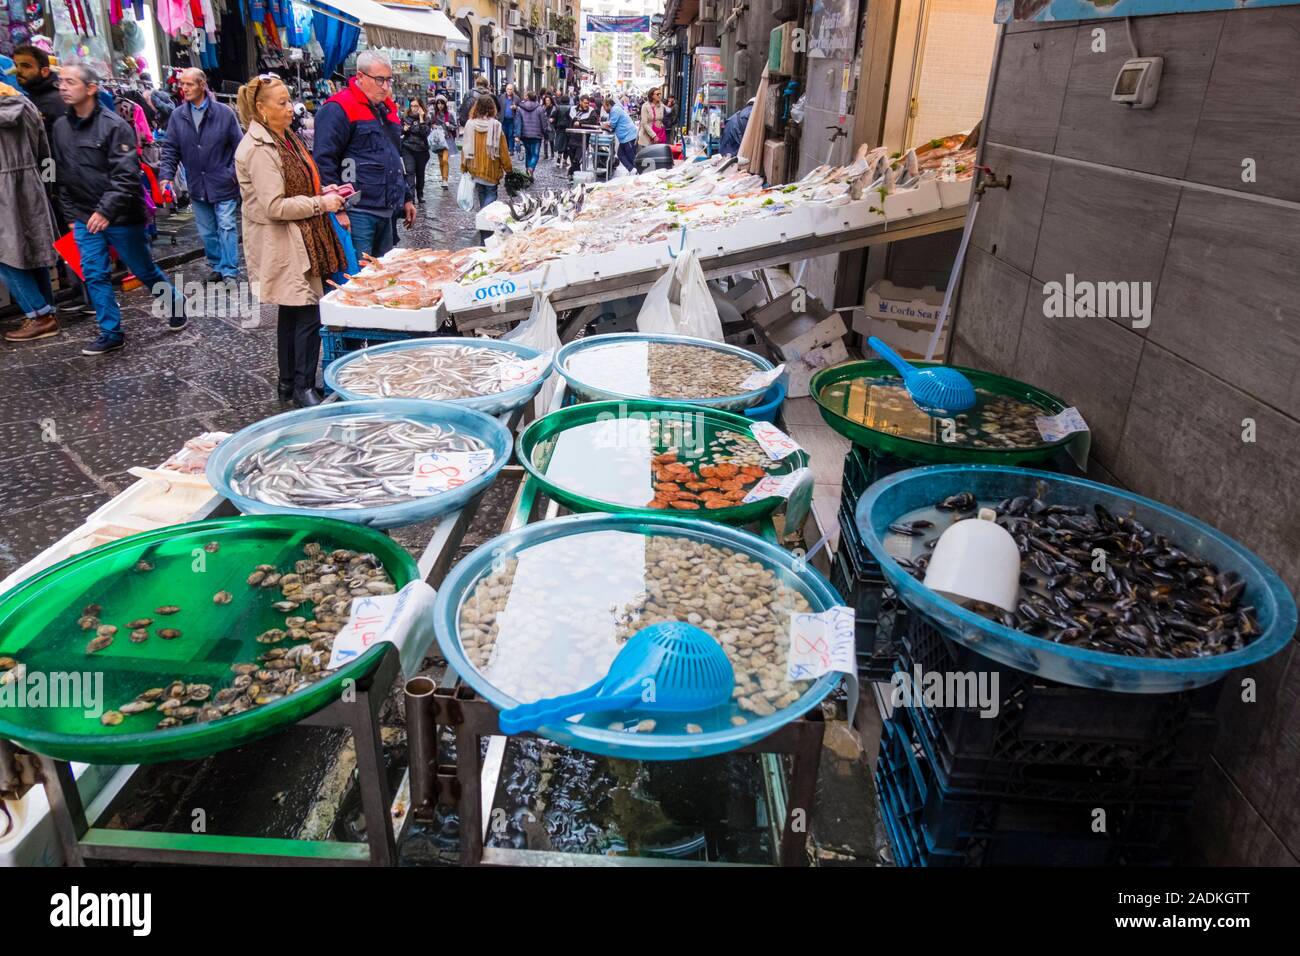 Fish seafood stall, Mercantino della Pignasecca, Pignasecca street market, Quartieri Spagnoli, Naples, Italy Stock Photo